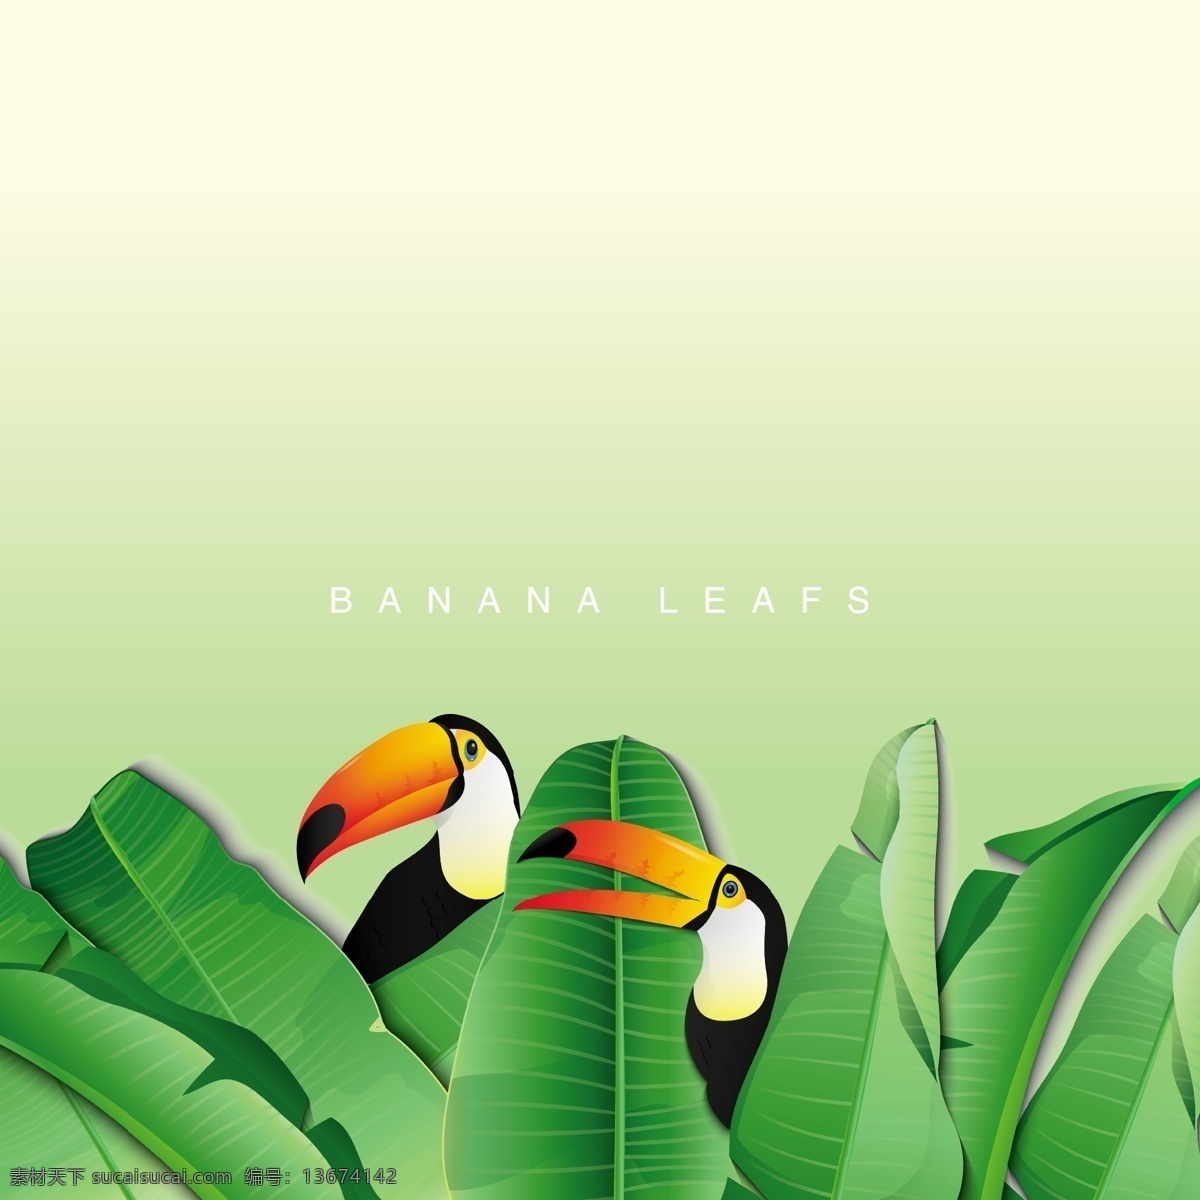 香蕉 片 巨 嘴 鸟 背景 树 叶 夏天 绿色 自然 绿色的背景 墙纸 树叶 热带植物 环境 自然背景 背景的绿色 绿色的叶子 叶子 香蕉叶